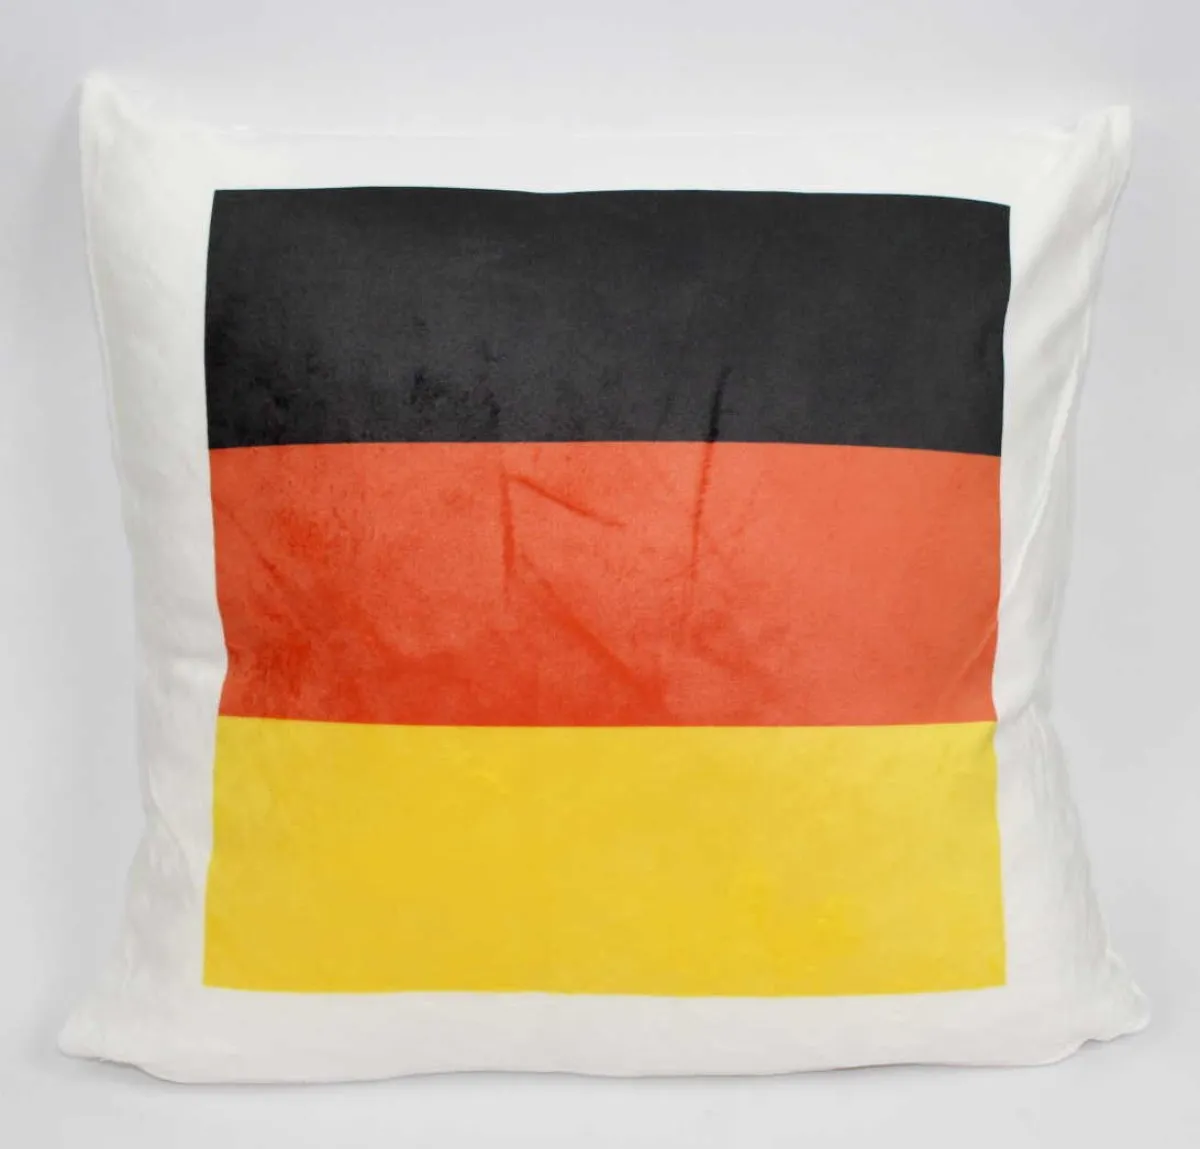 Kissen mit Deutschland Flagge | Fahne